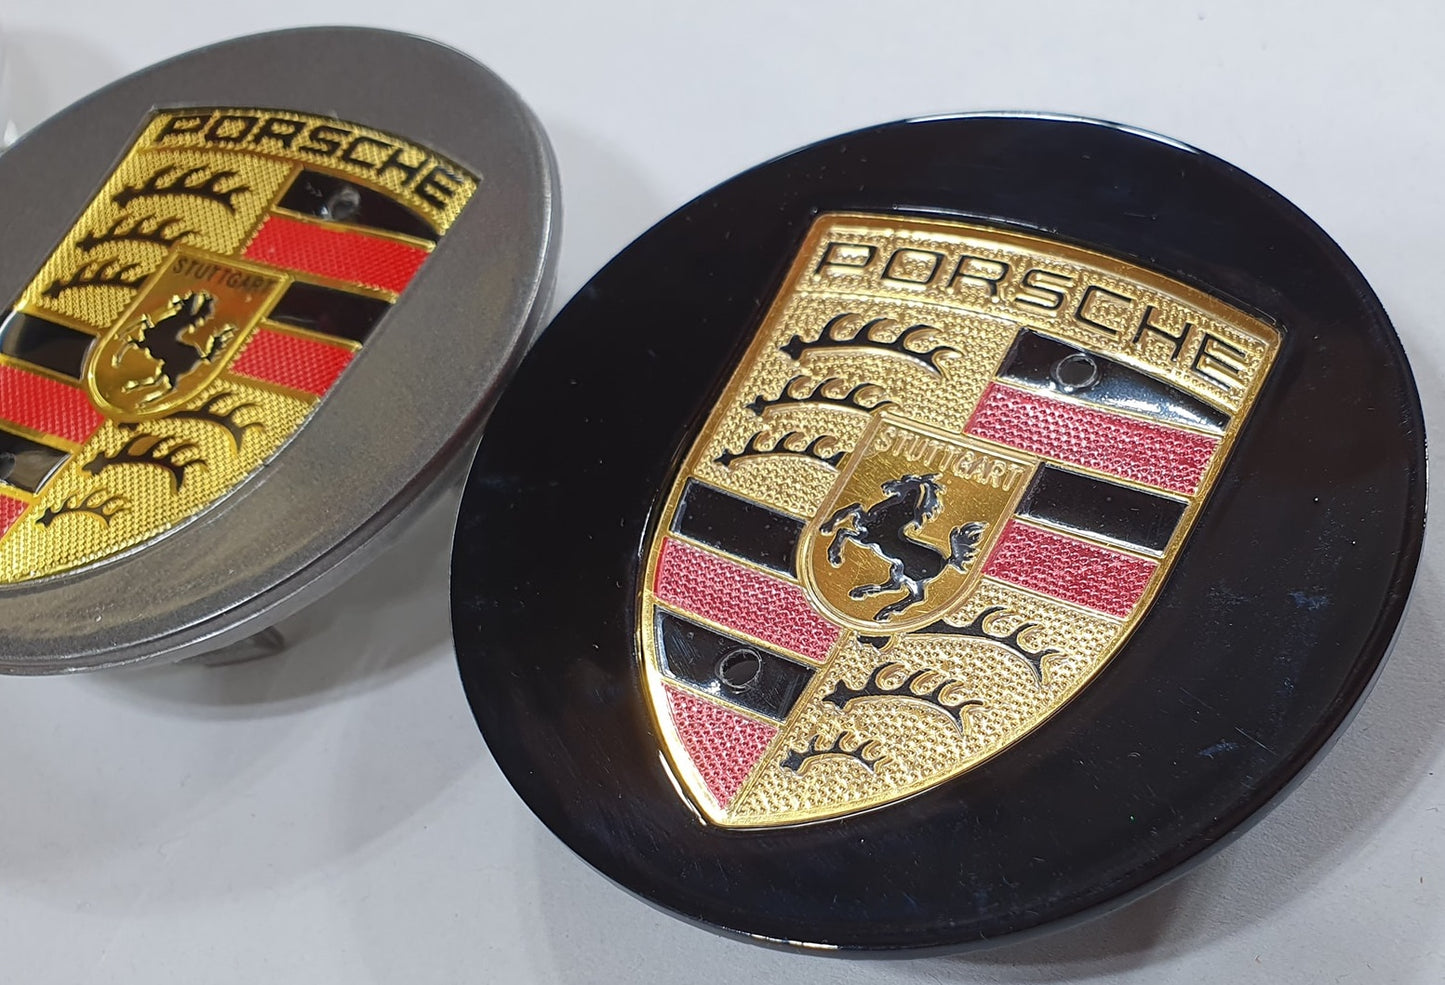 Zubehör - Porsche Wheel Centre Caps Badge Emblem - 76mm - Black - Porsche -  Nach dem Jahr 2000 - Catawiki